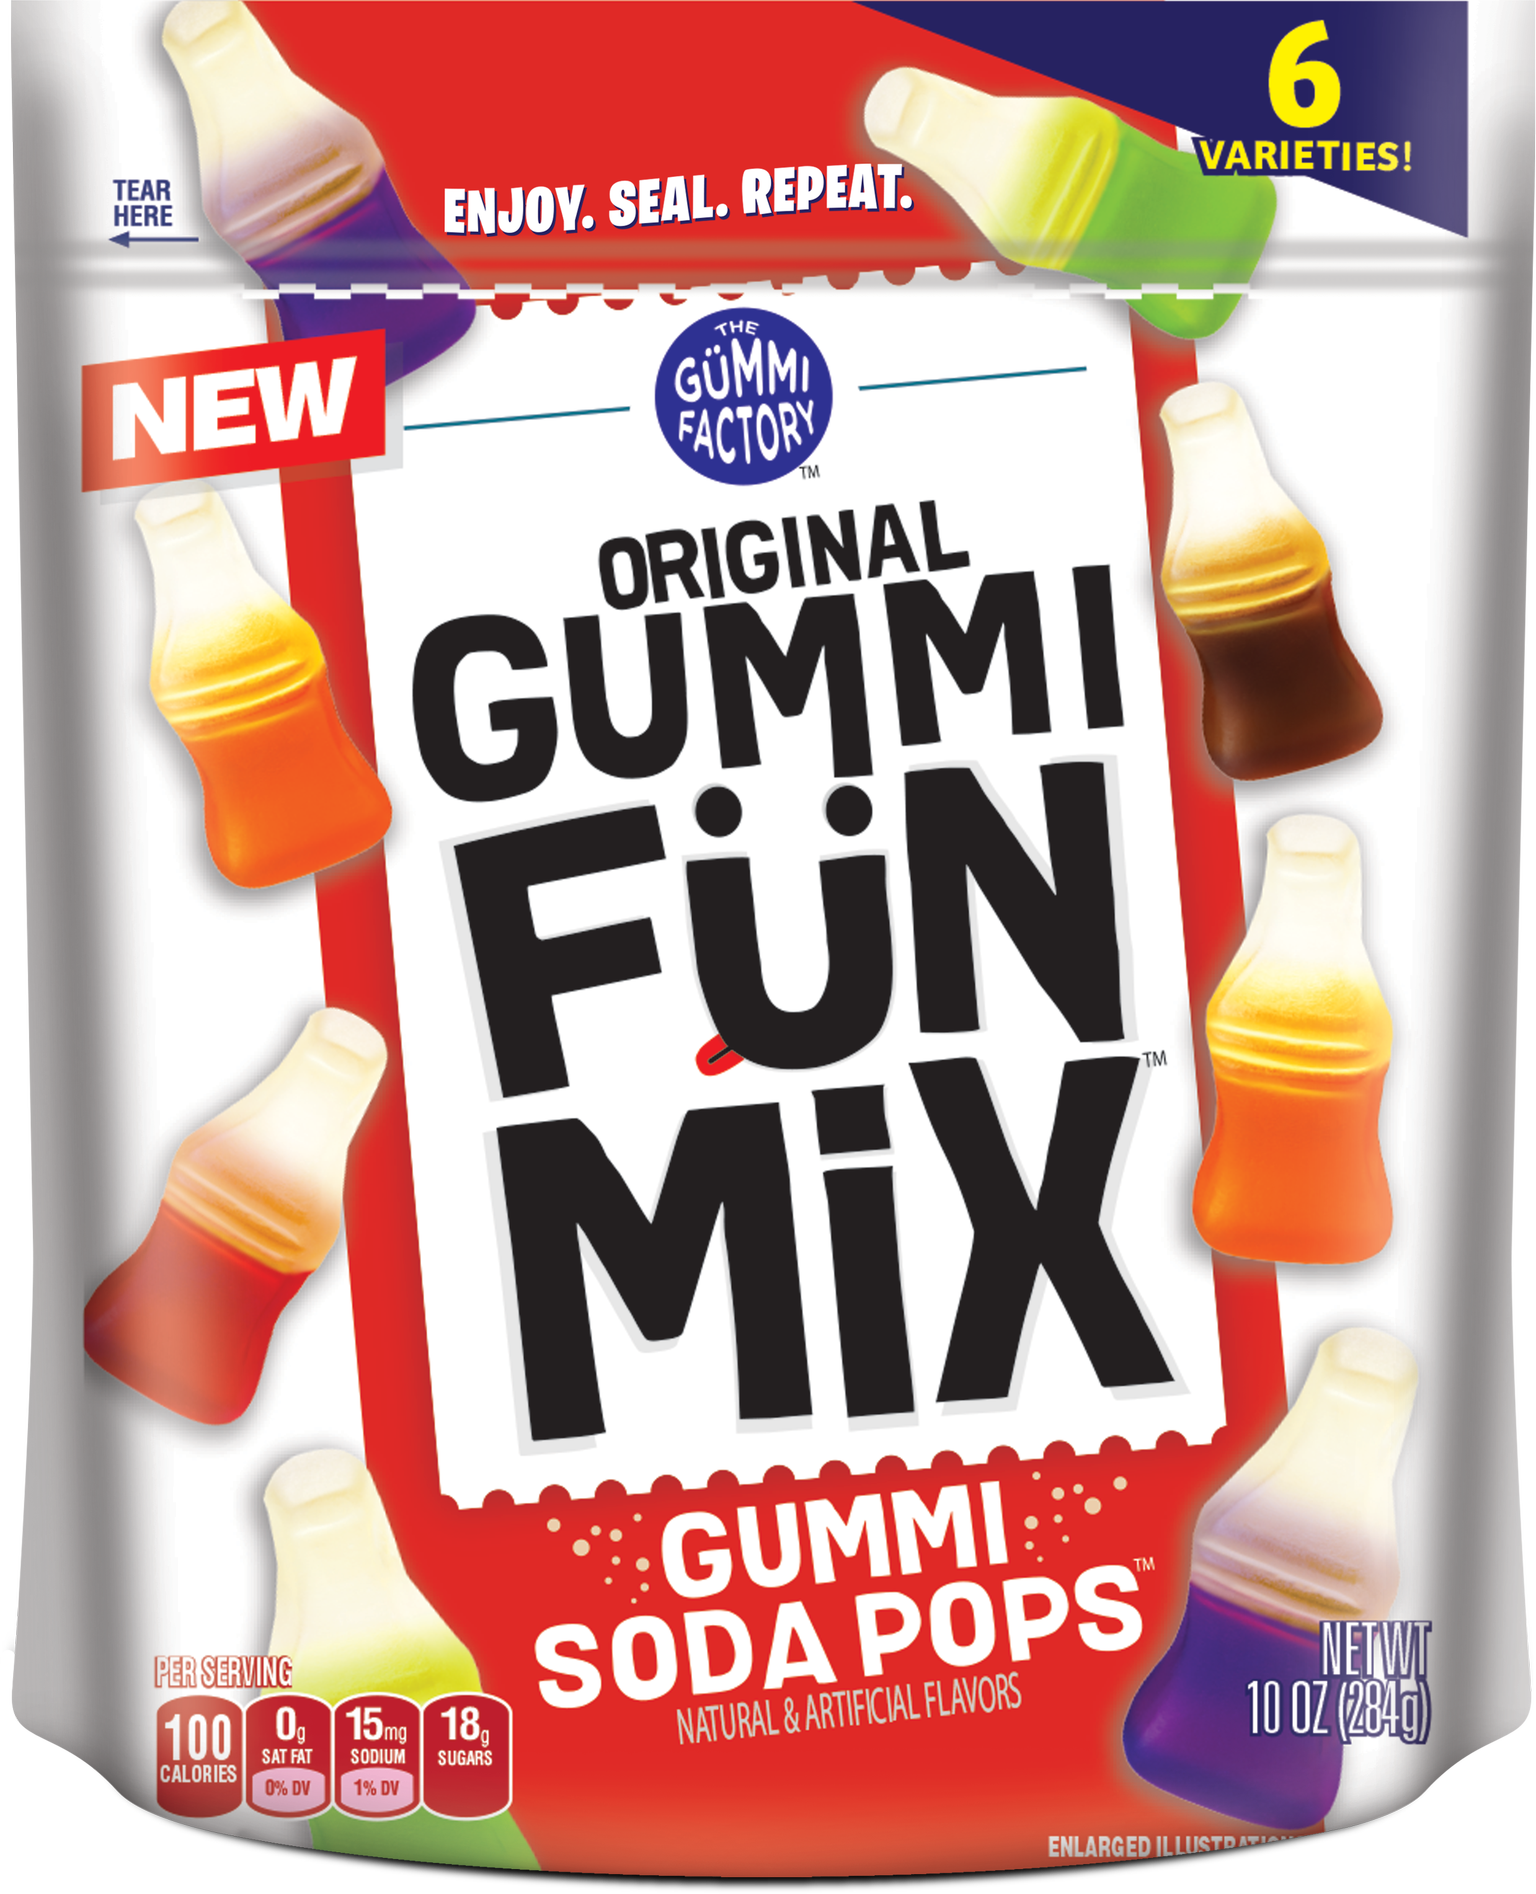 ORIGINAL GUMMI FUN MiX Gummi Soda Pops, 10 oz bag